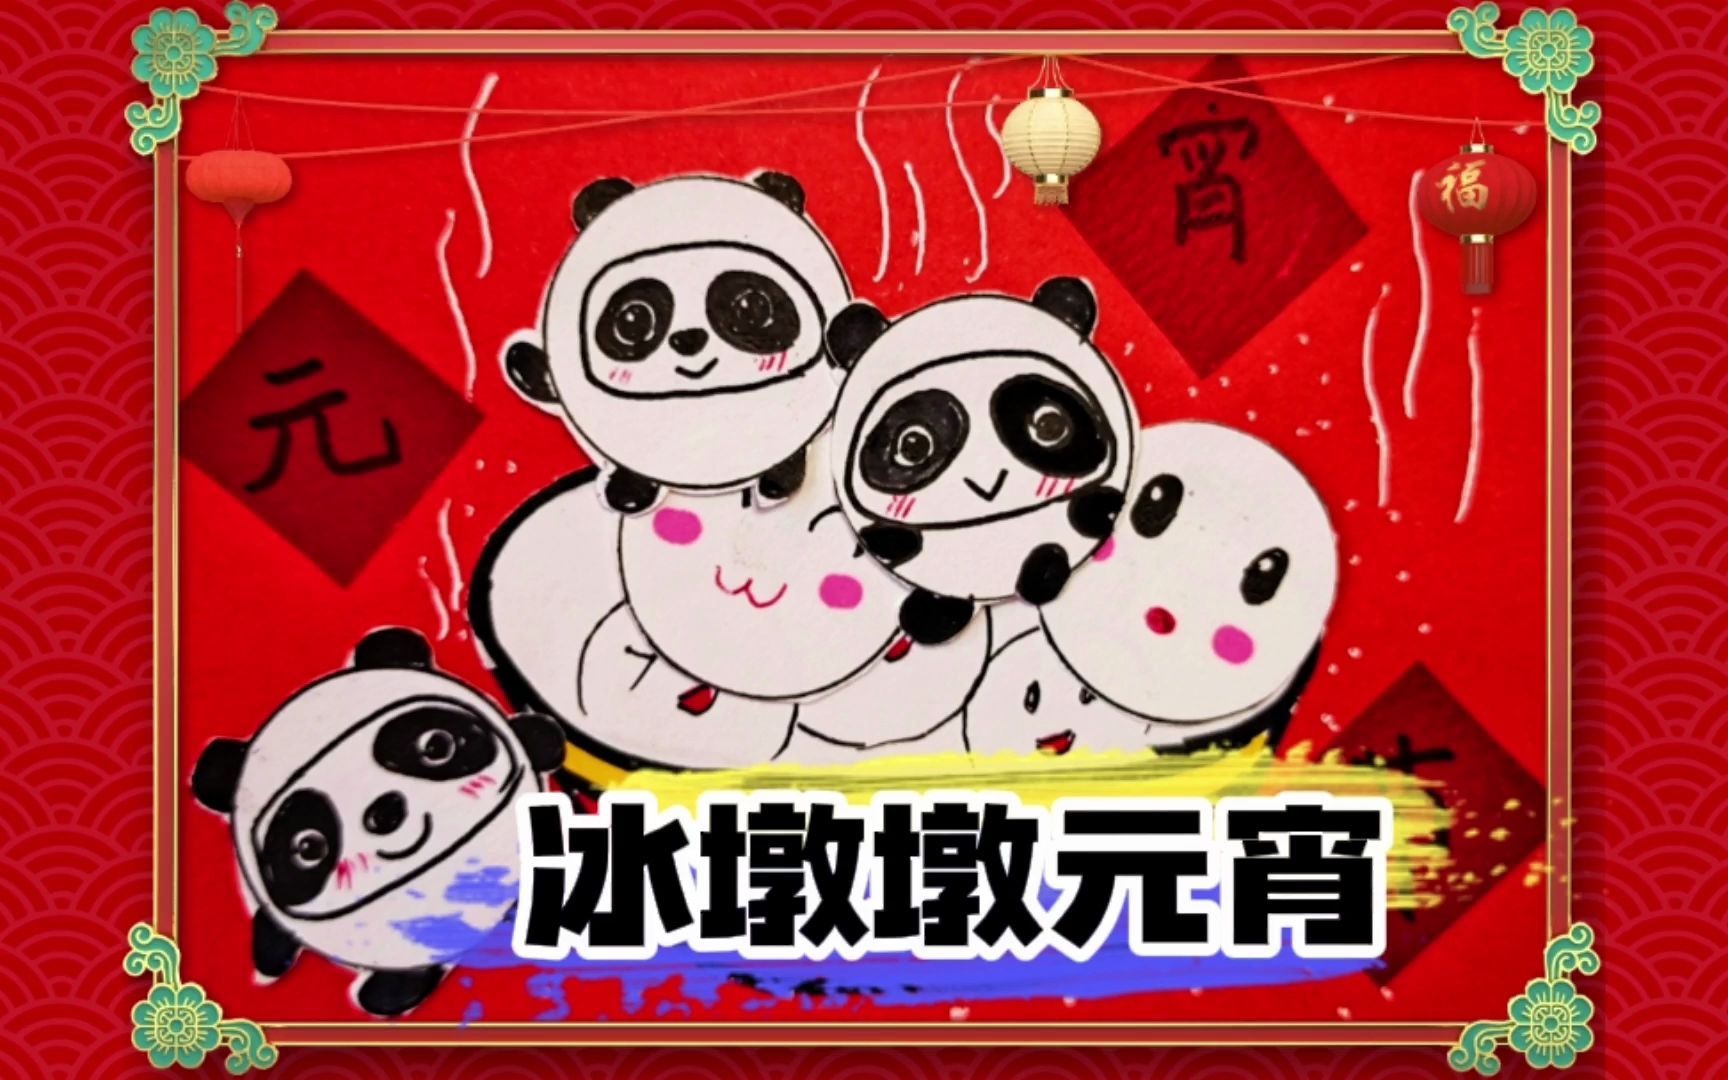 北京冬奥逢元宵节,你见过可爱冰墩墩元宵吗?